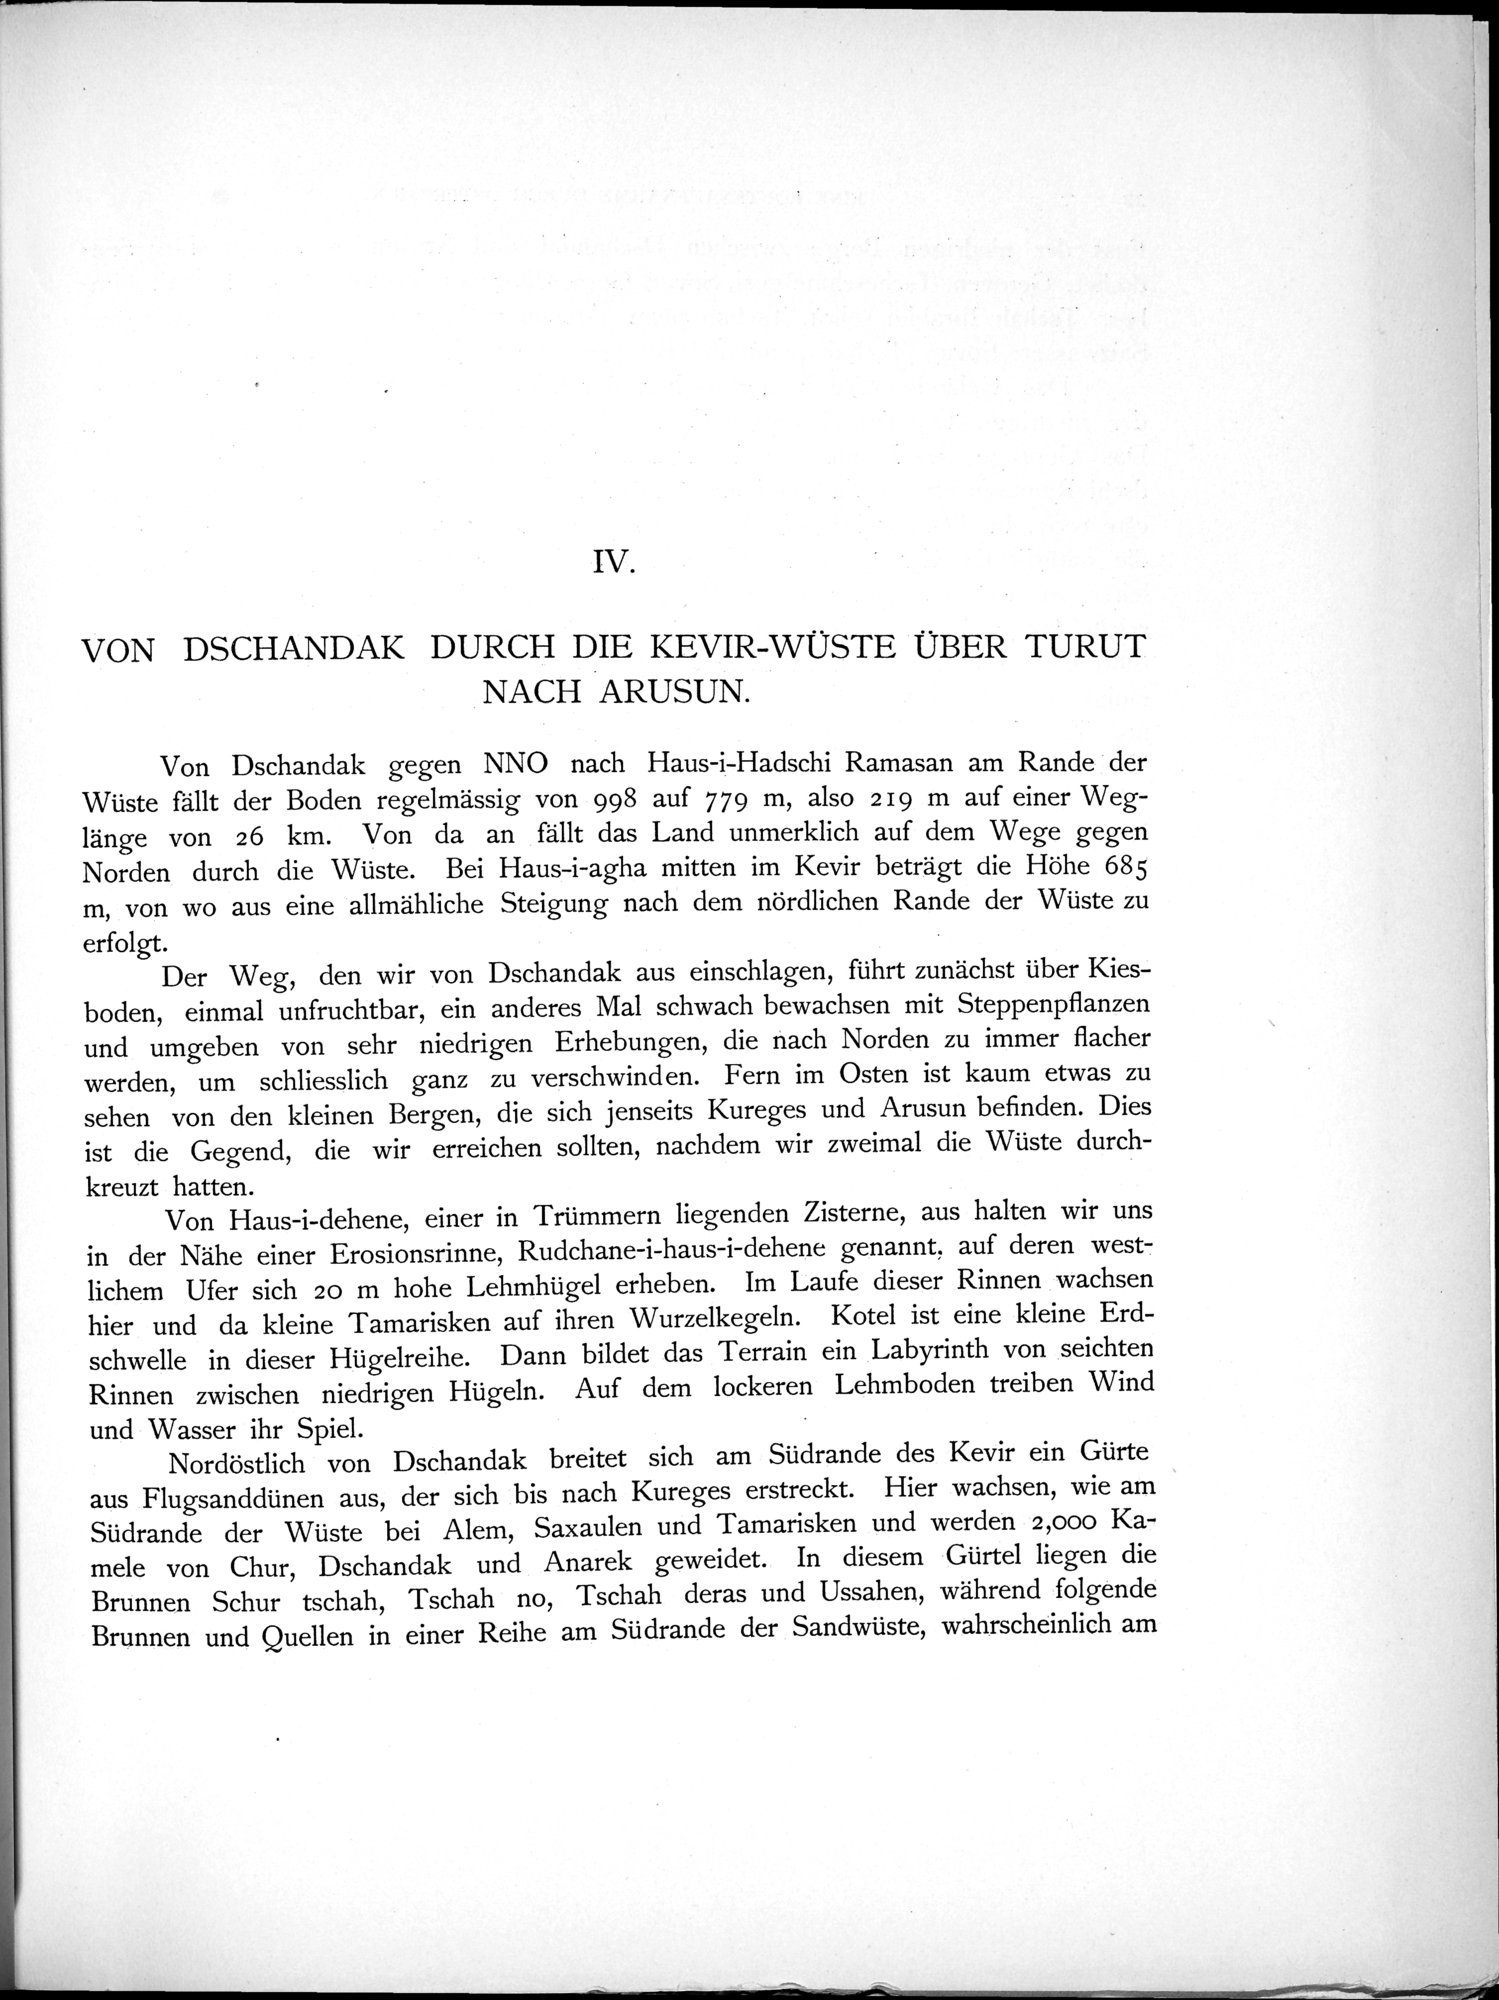 Eine Routenaufnahme durch Ostpersien : vol.1 / Page 73 (Grayscale High Resolution Image)